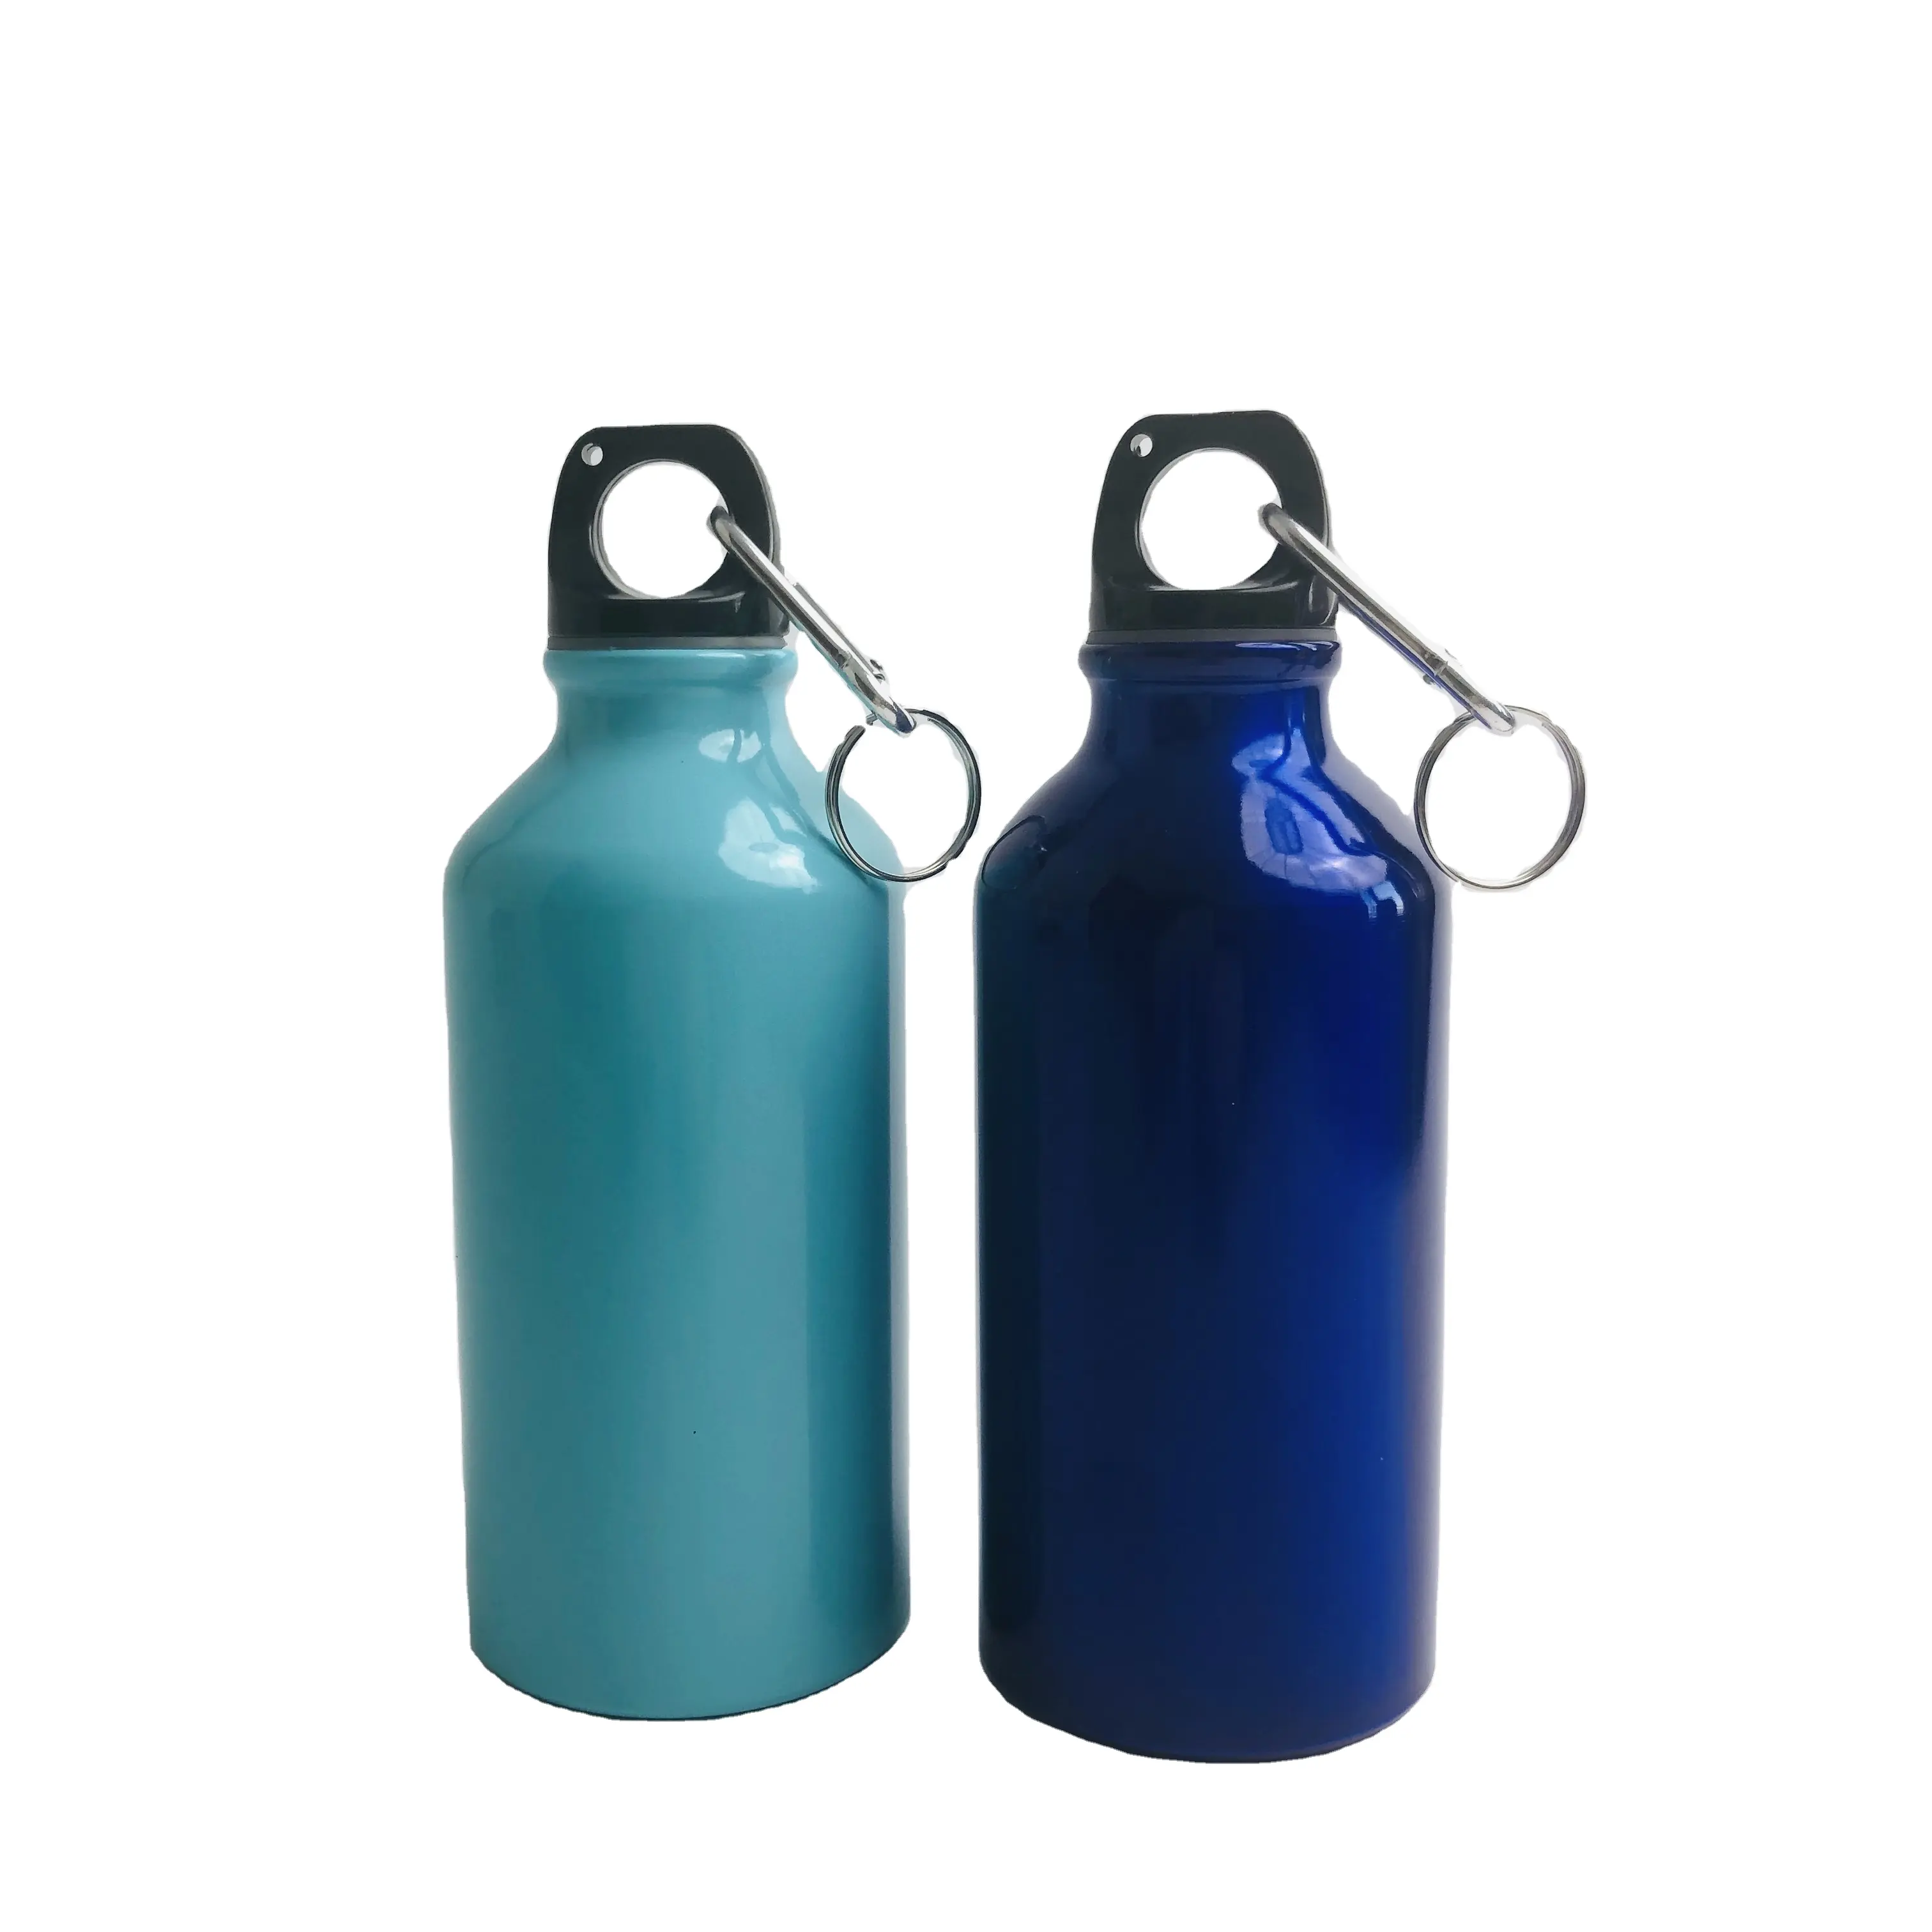 زجاجة مياه ذات شعار مخصص مصنوعة من الألومنيوم زجاجة مياه رياضية للمناطق الخارجية مصنوعة من الألومنيوم زجاجة مياه 500 مل من الفولاذ المقاوم للصدأ للترويج